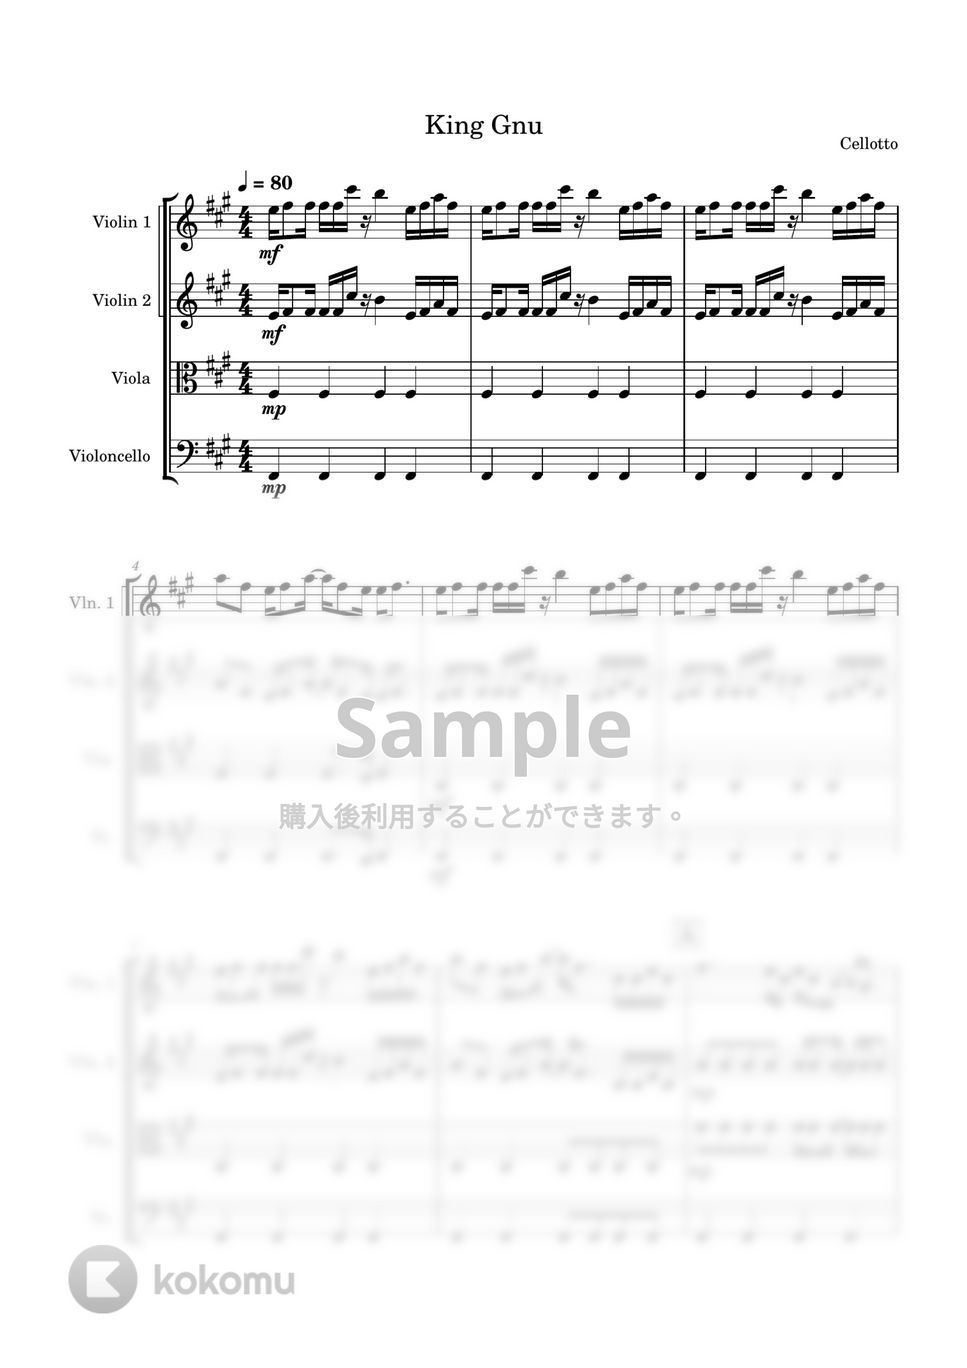 KingGnu - 飛行艇 (弦楽四重奏) by Cellotto